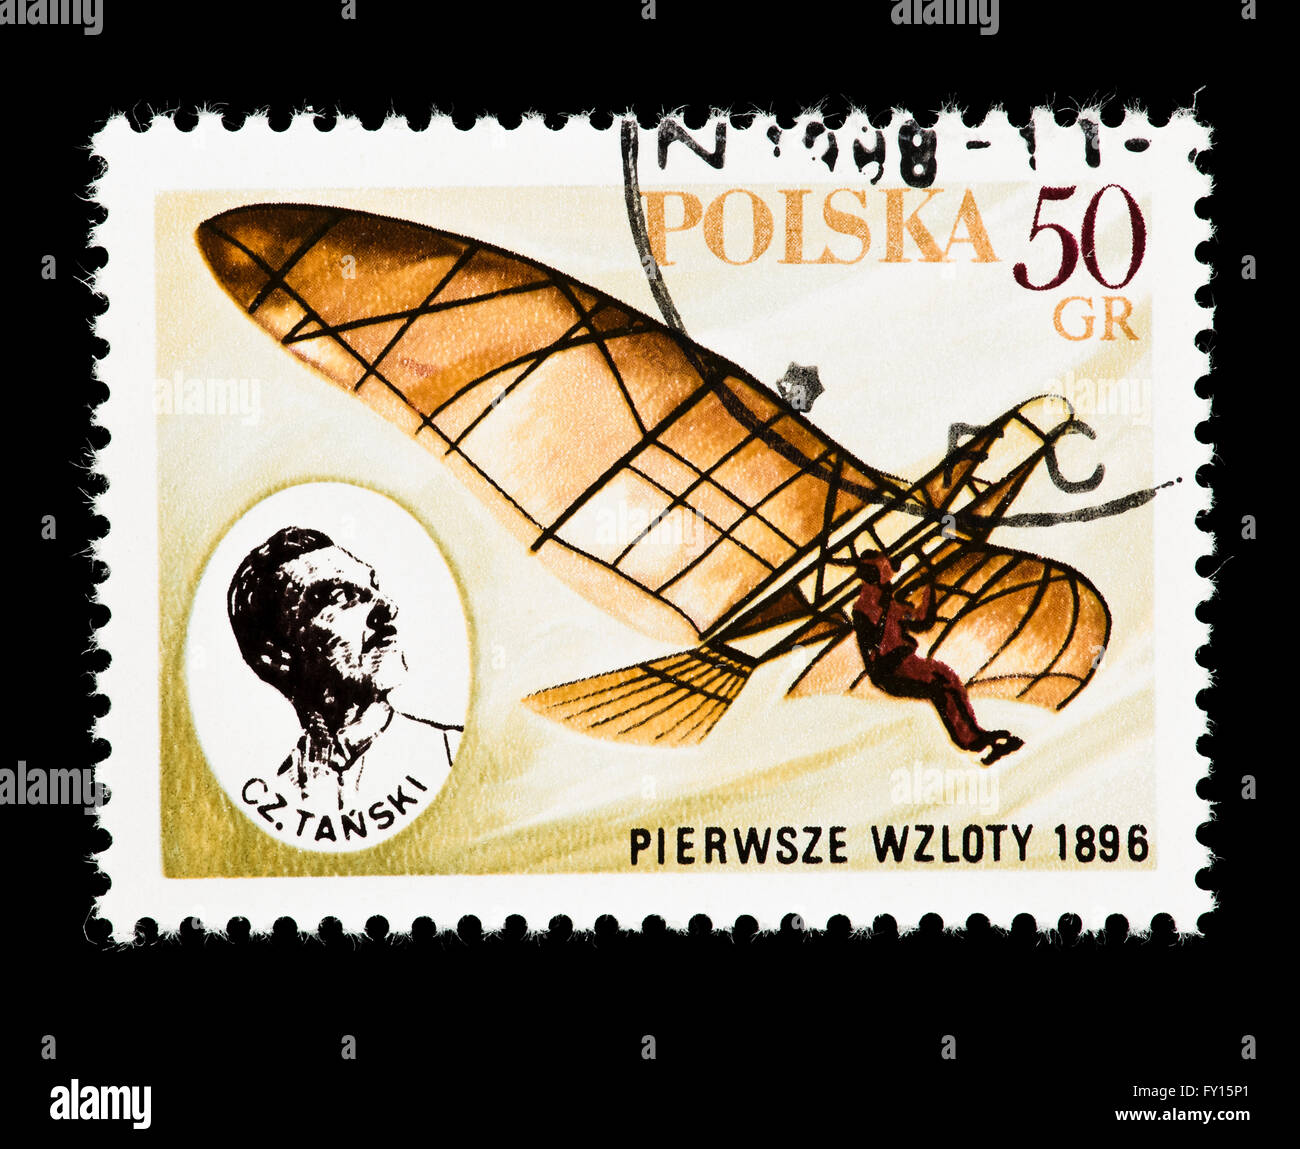 Timbre-poste de la Pologne représentant Pierwsze Wzloty et Czeslaw Tanski, début des pionniers de l'aviation polonaise. Banque D'Images